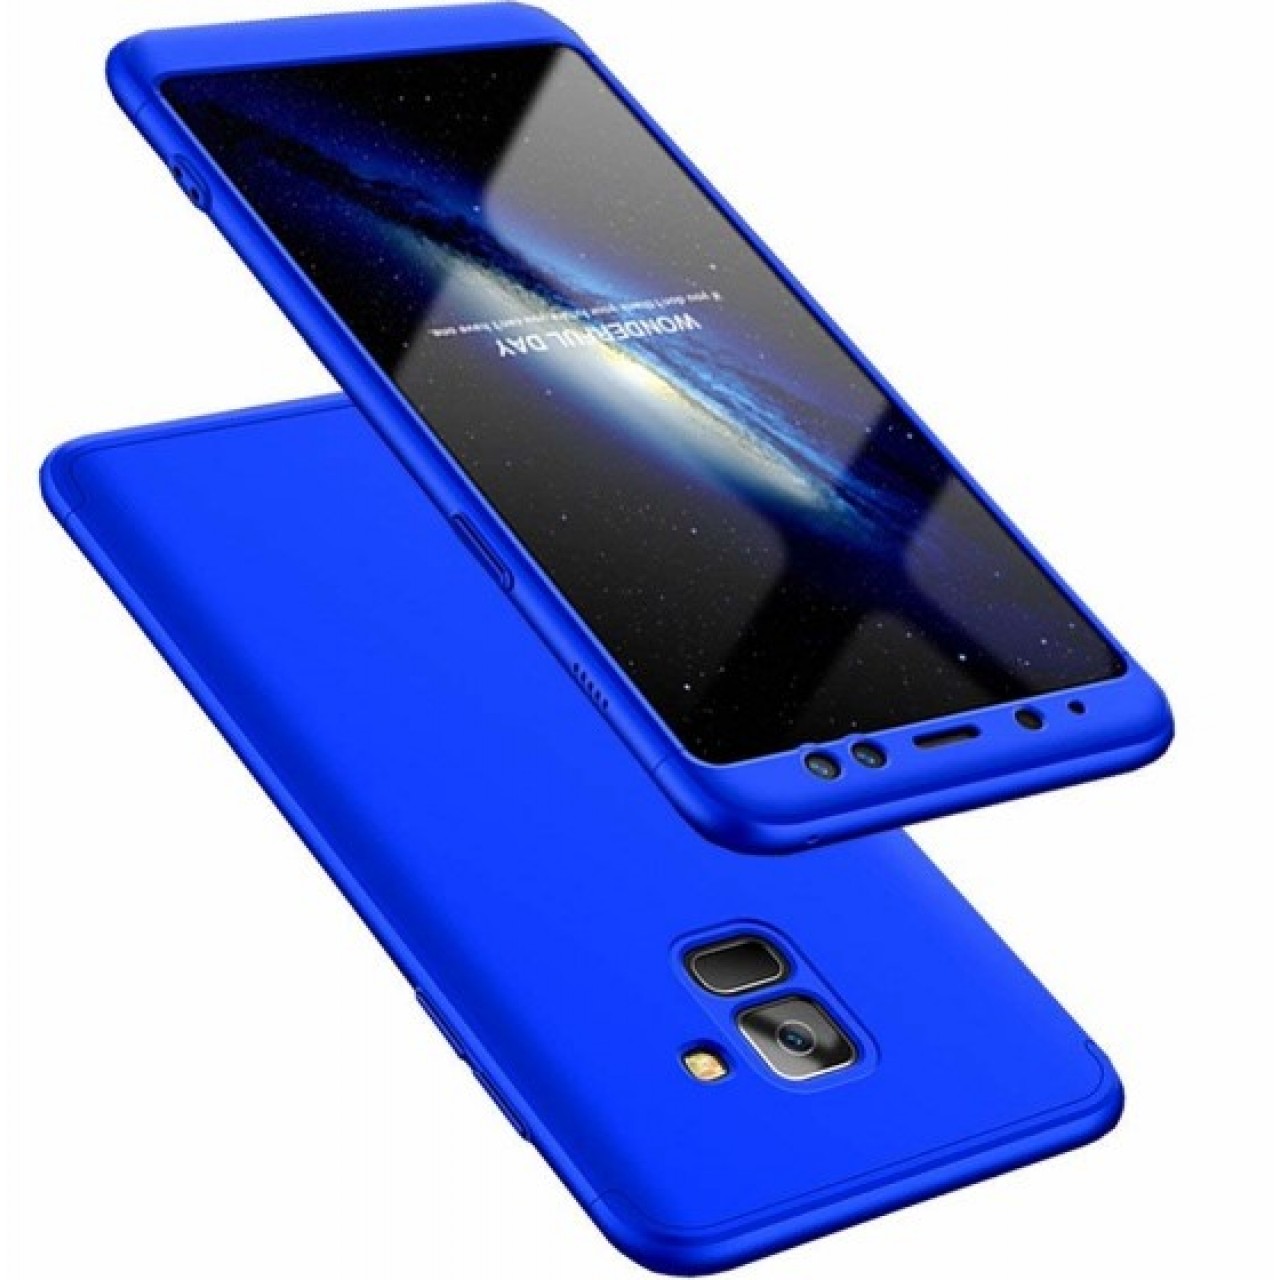 Θήκη Samsung Galaxy A8 2018 A530 Full Body GKK 360° Σκληρή Πλαστική - 4639 - Μπλε - ΟΕΜ